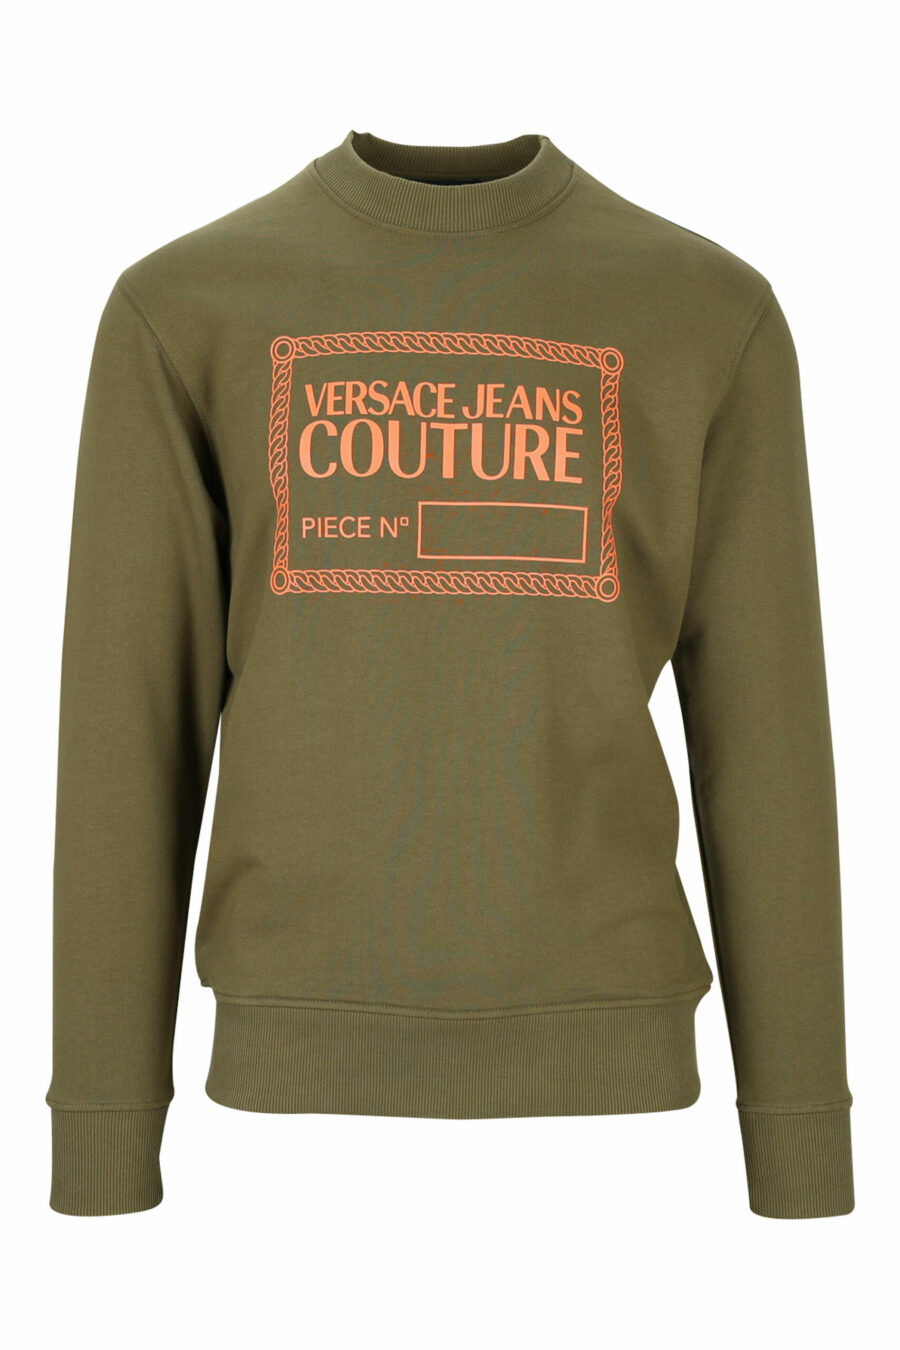 Militärgrünes Sweatshirt mit orangem Maxilogo "Stückzahl" - 8052019469479 skaliert